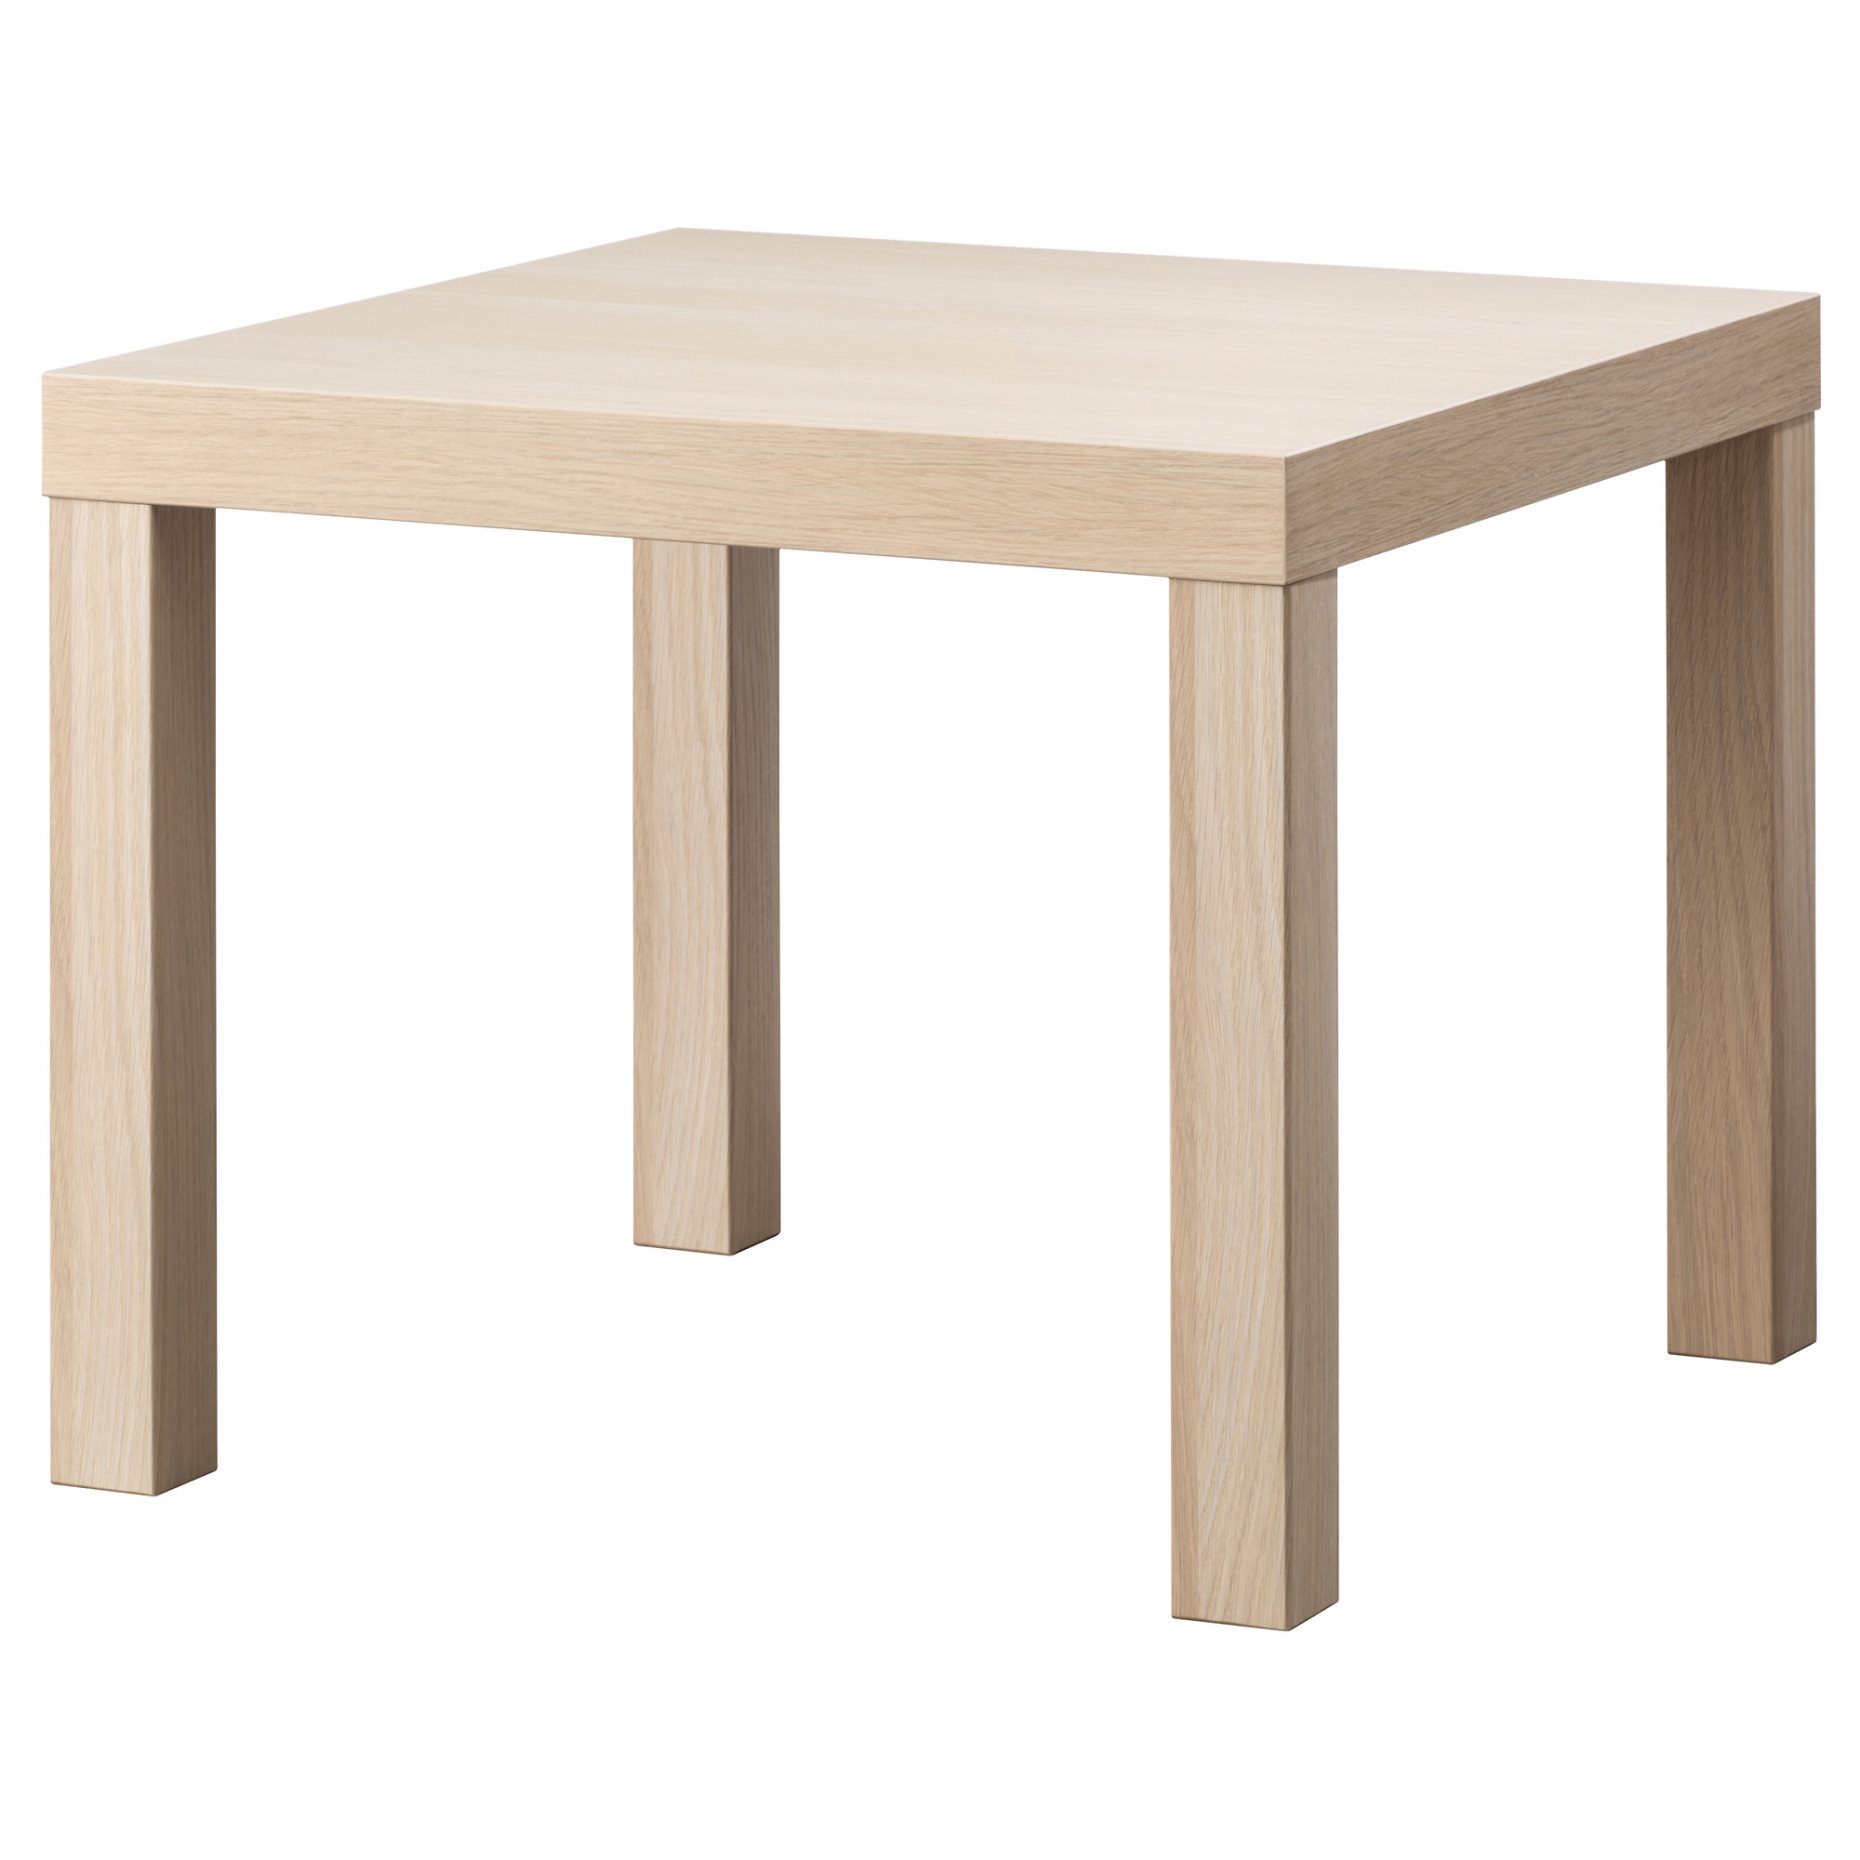 LACK, side table, 55x55 cm, 703.190.28